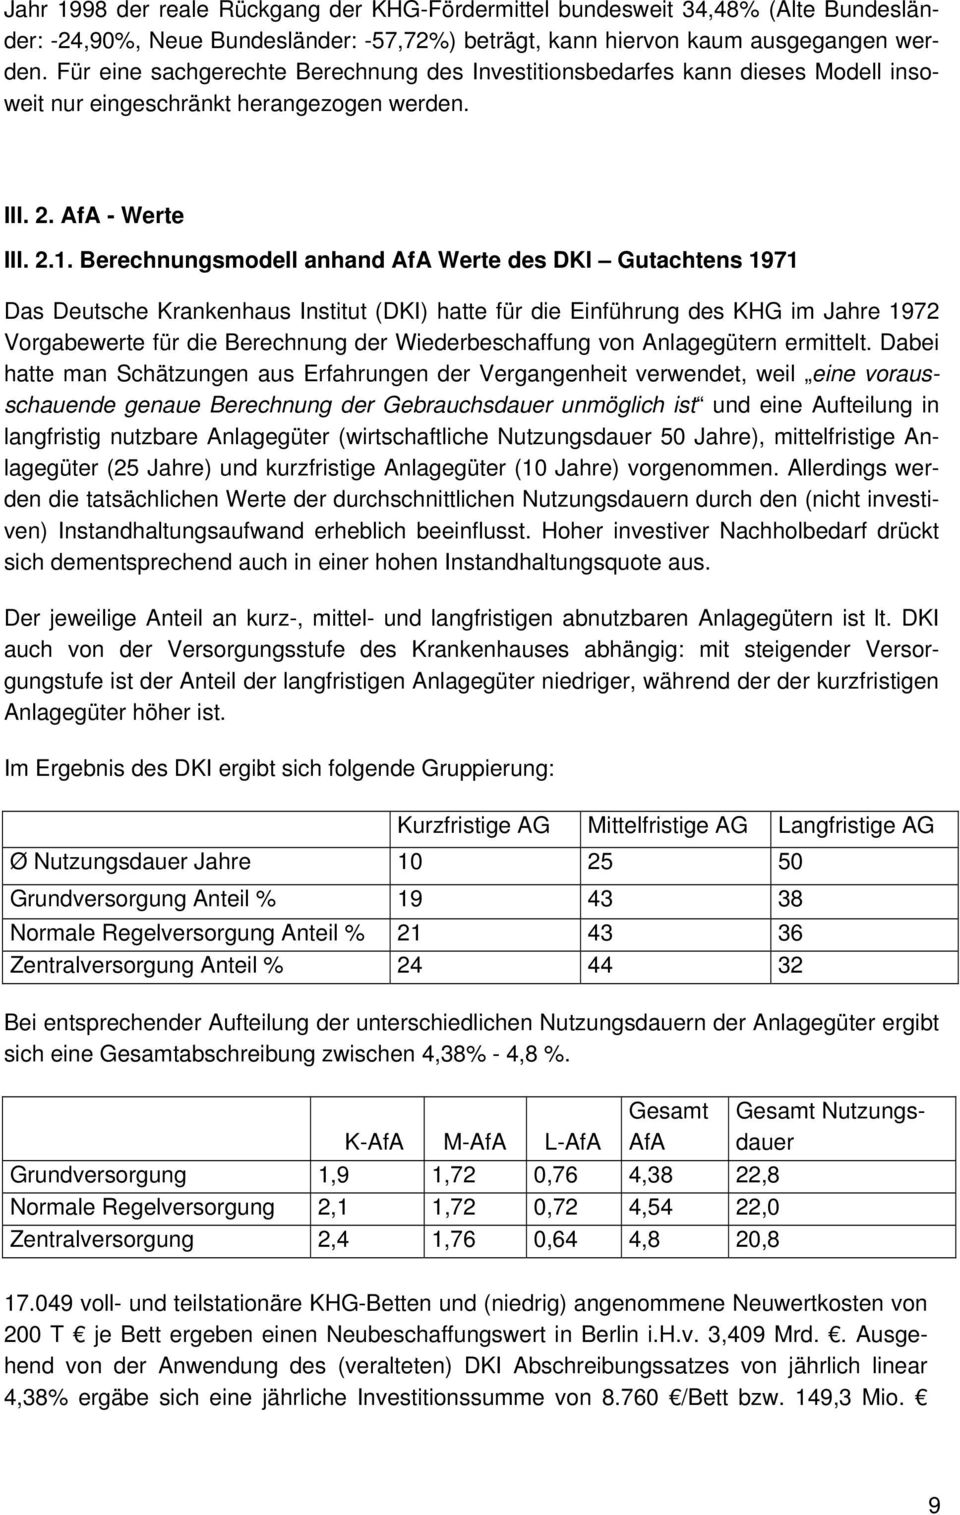 Berechnungsmodell anhand AfA Werte des DKI Gutachtens 1971 Das Deutsche Krankenhaus Institut (DKI) hatte für die Einführung des KHG im Jahre 1972 Vorgabewerte für die Berechnung der Wiederbeschaffung